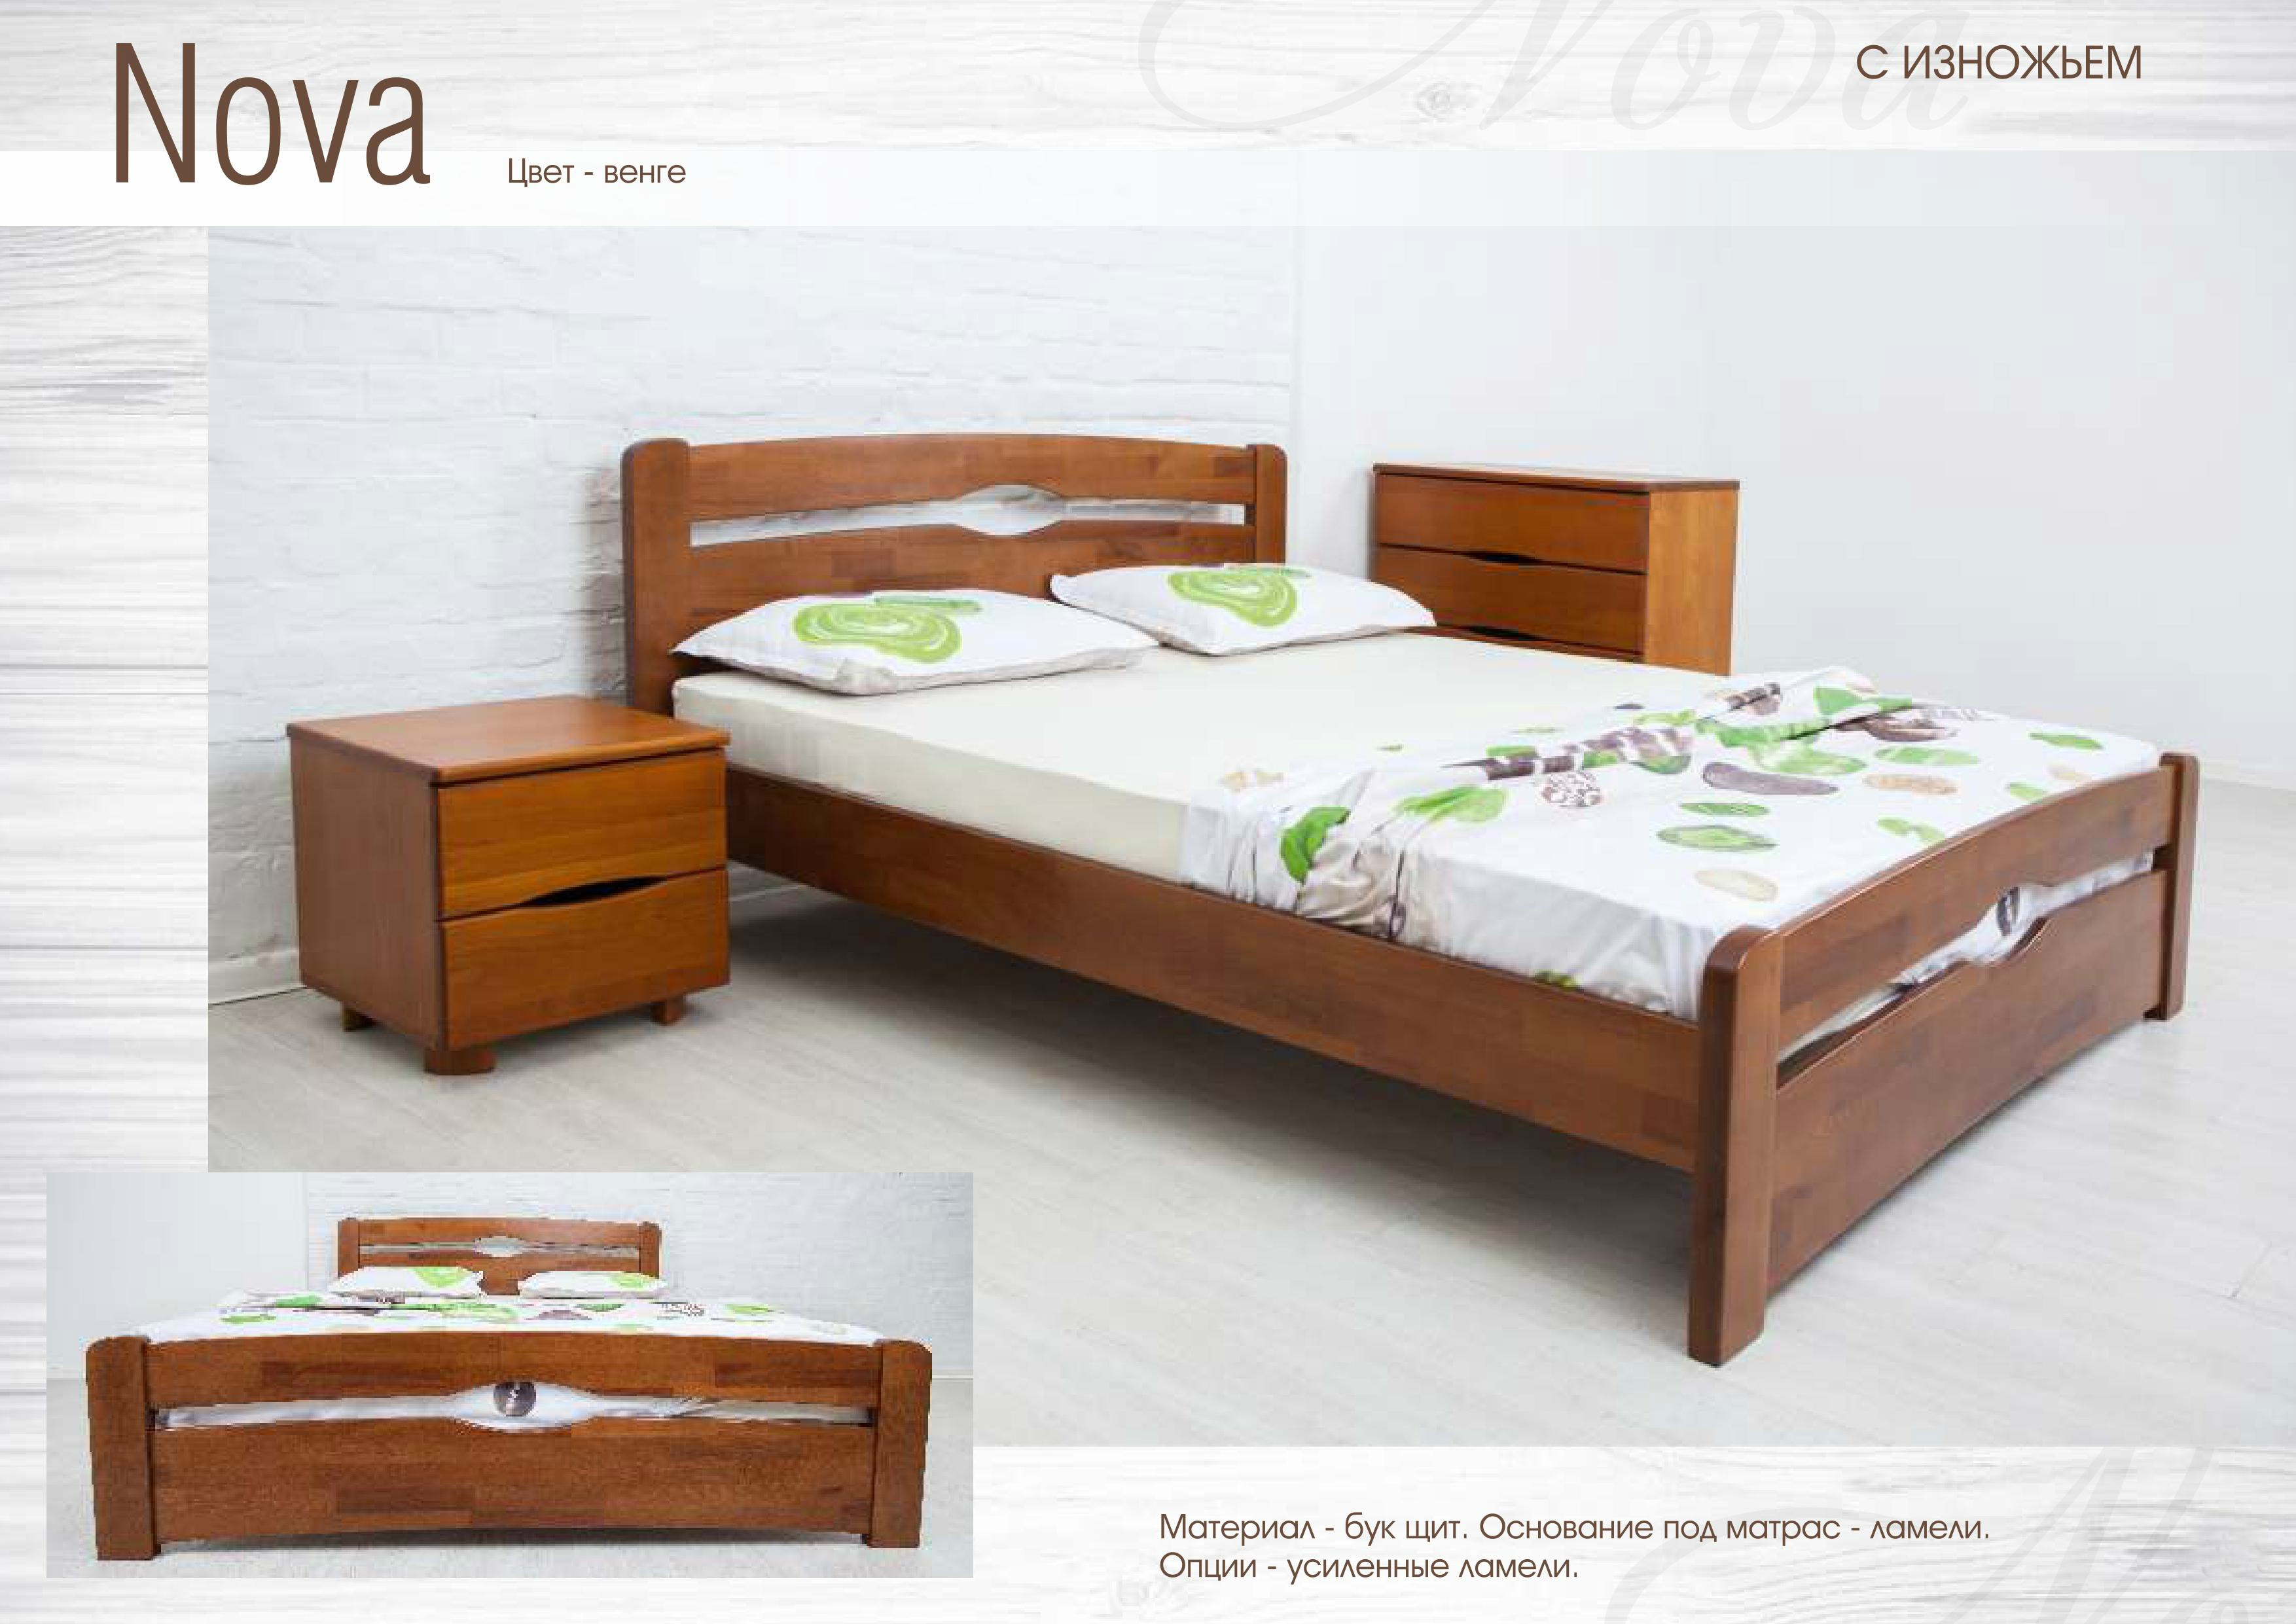 Кровать Нова с изножьем 2000*800